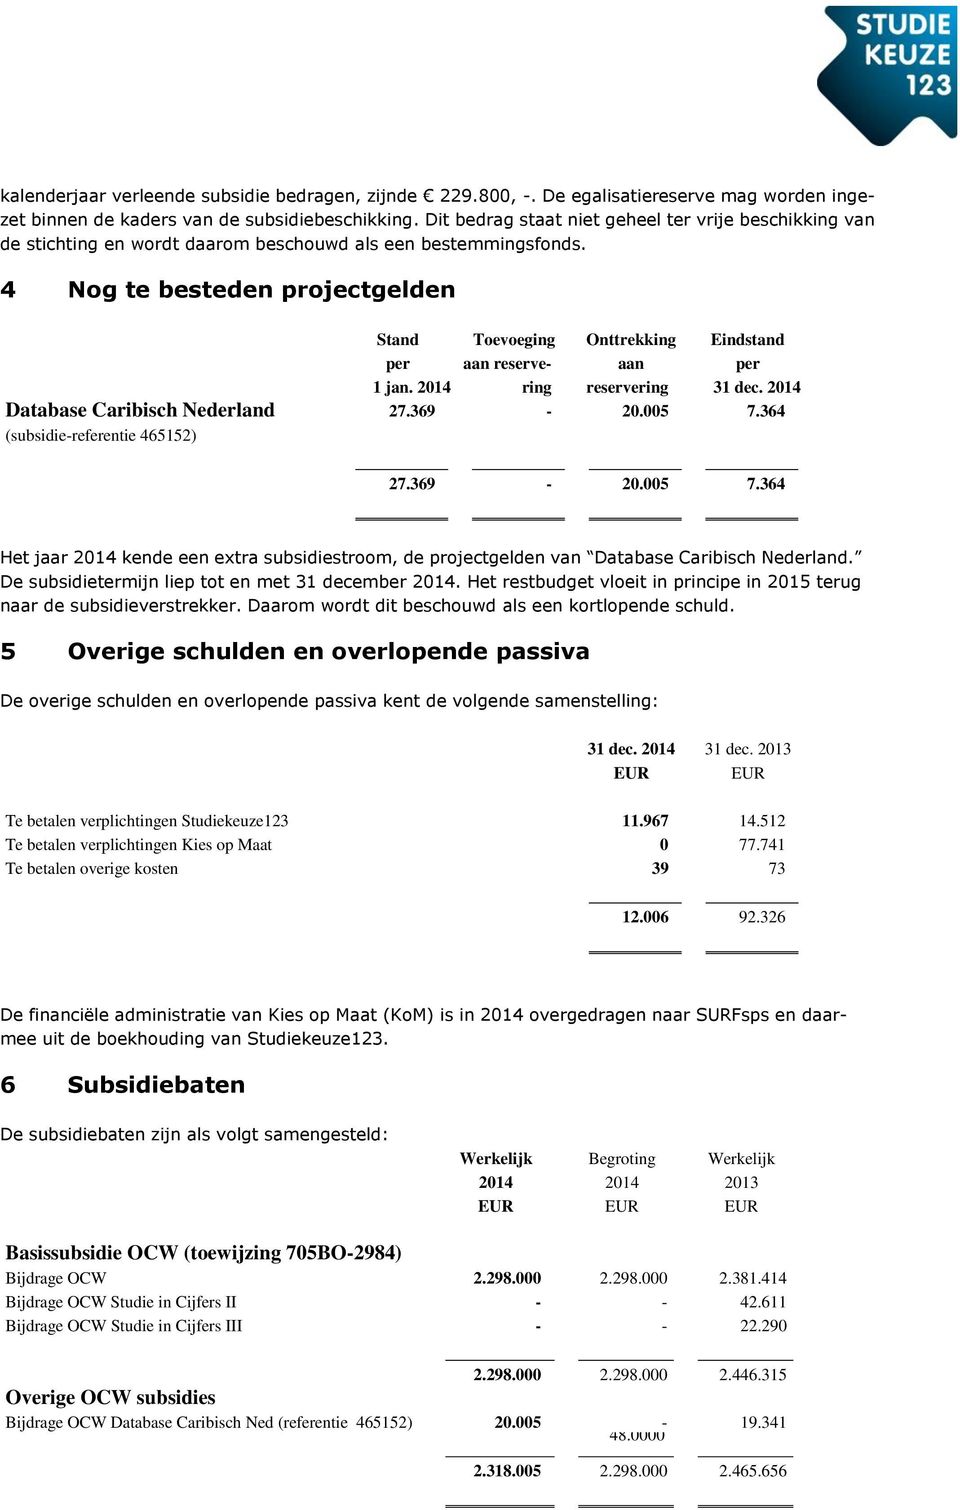 4 Nog te besteden projectgelden Database Caribisch Nederland (subsidie-referentie 465152) Stand per 1 jan. Toevoeging aan reservering Onttrekking aan reservering Eindstand per 31 dec. 27.369-20.005 7.